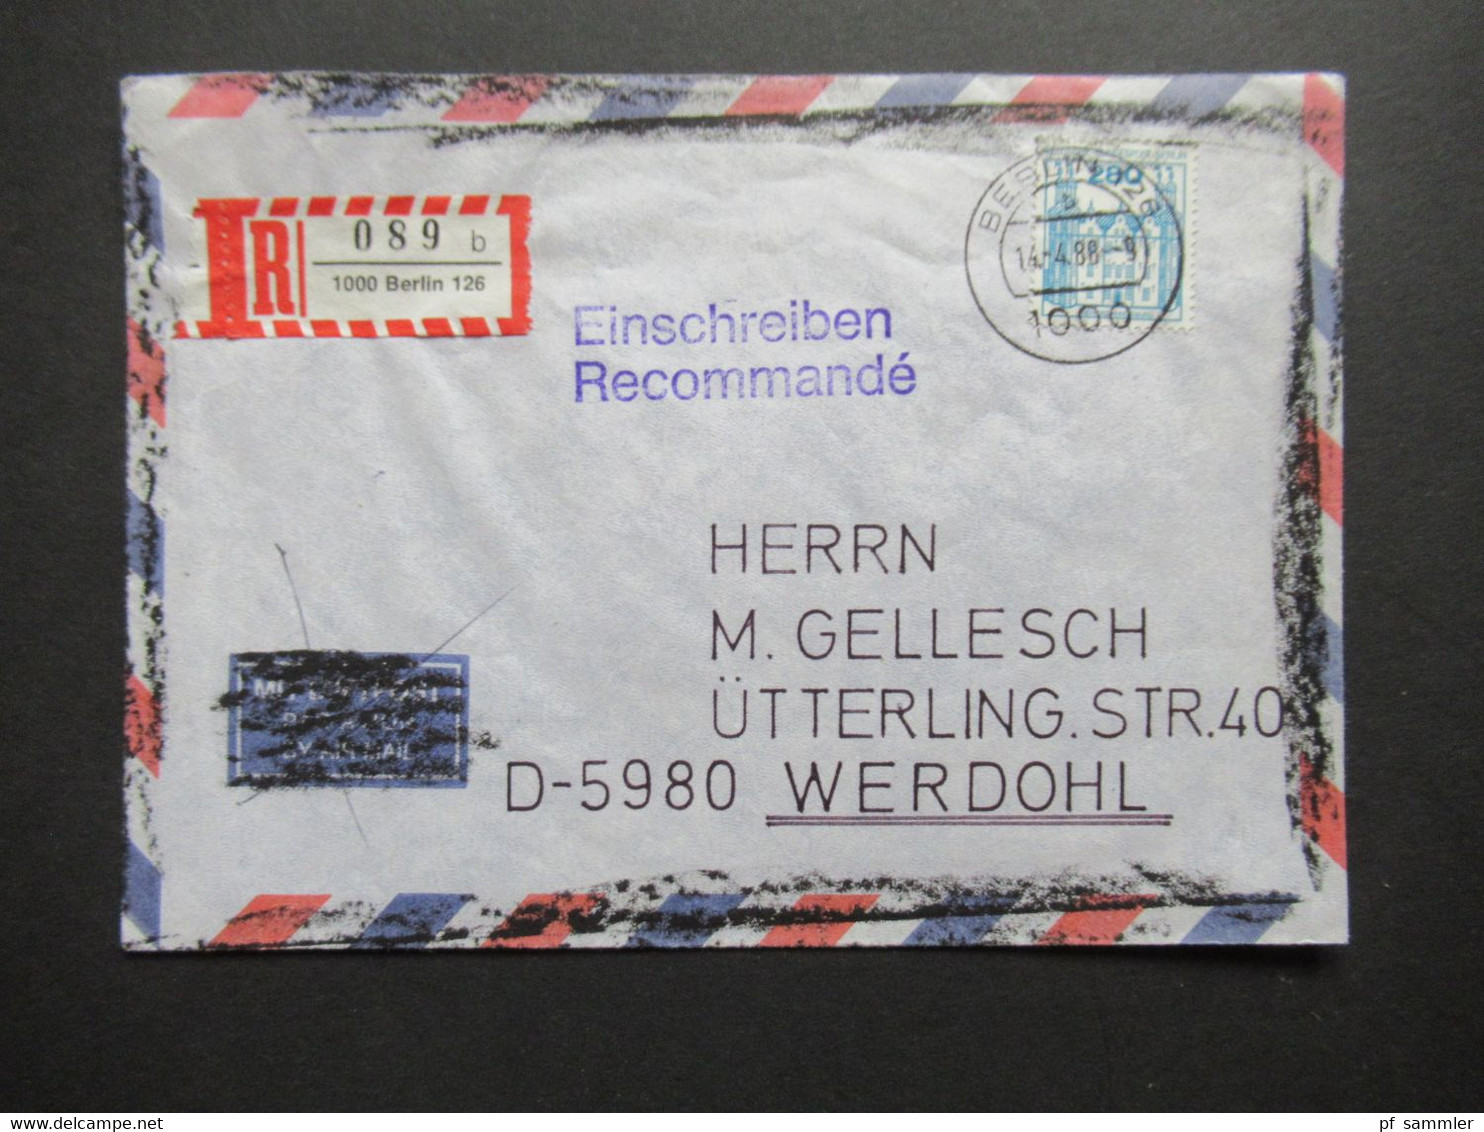 Berlin 1988 BuS Michel Nr. 676 EF Einschreiben Recommandé Berlin 126 - Werdohl Luftpost Umschlag Geschwärzt!! - Briefe U. Dokumente